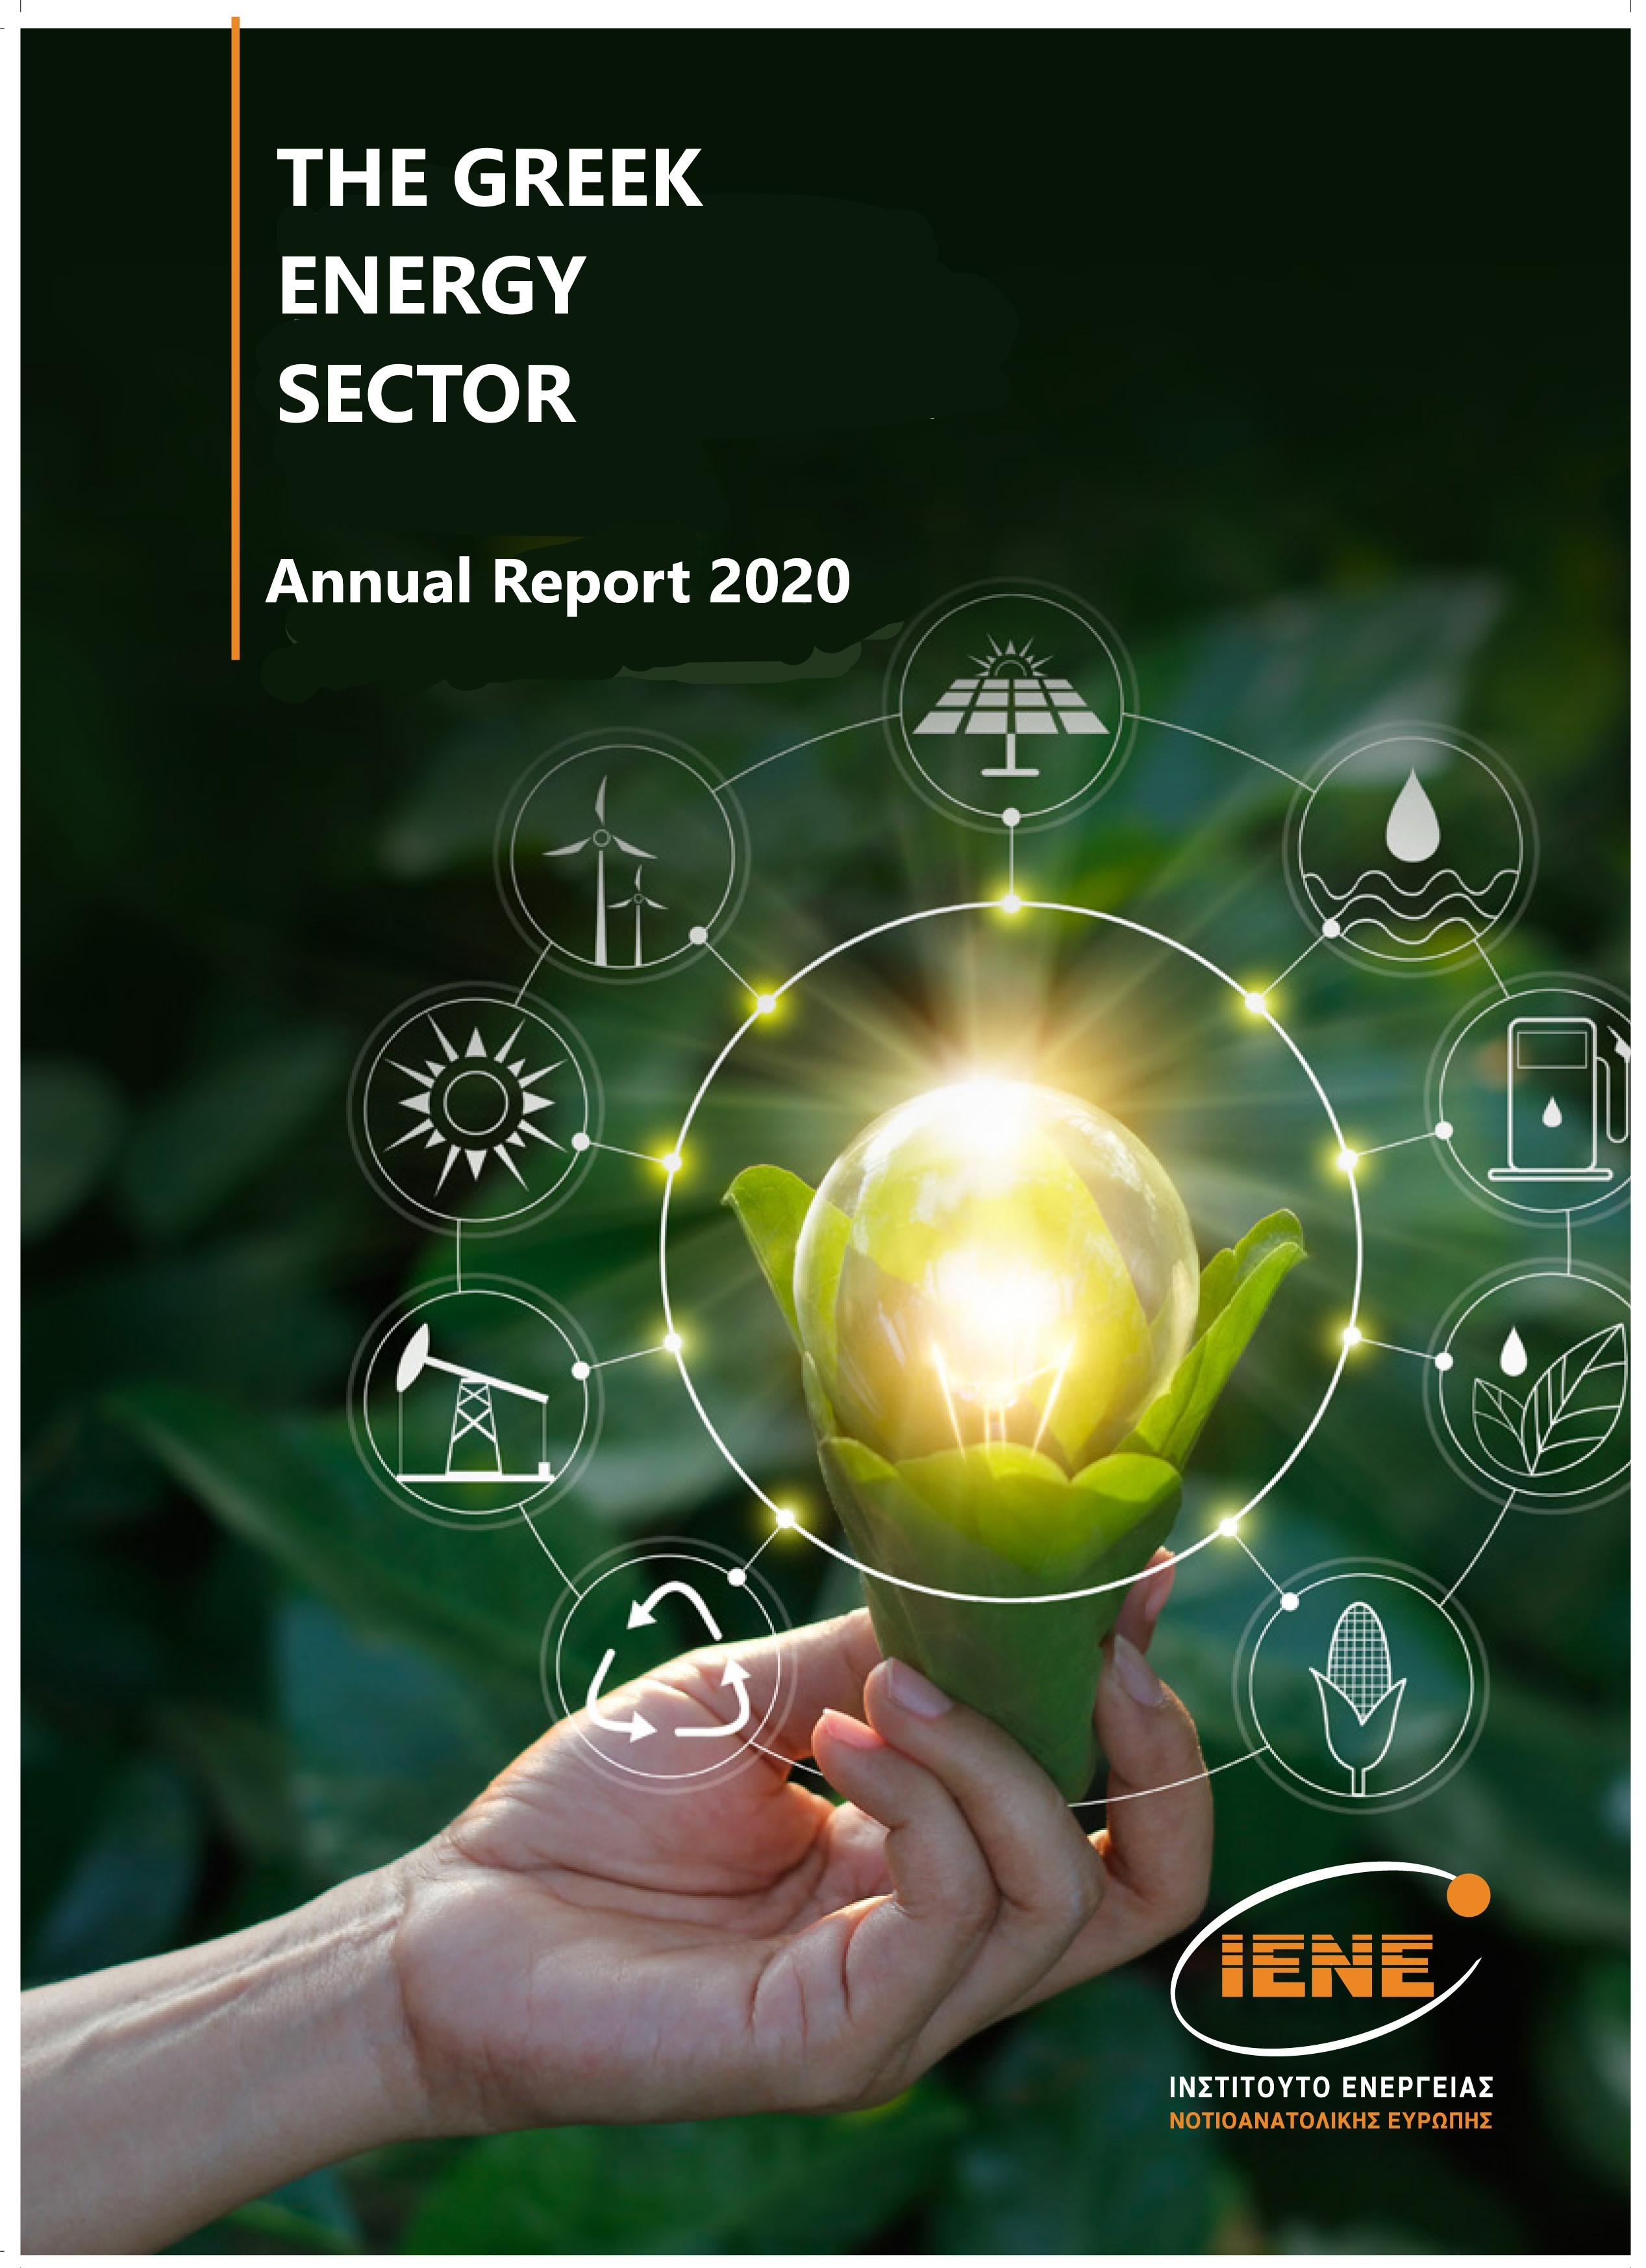 IENE Annual Report 2020: Greece’s dynamic energy landscape